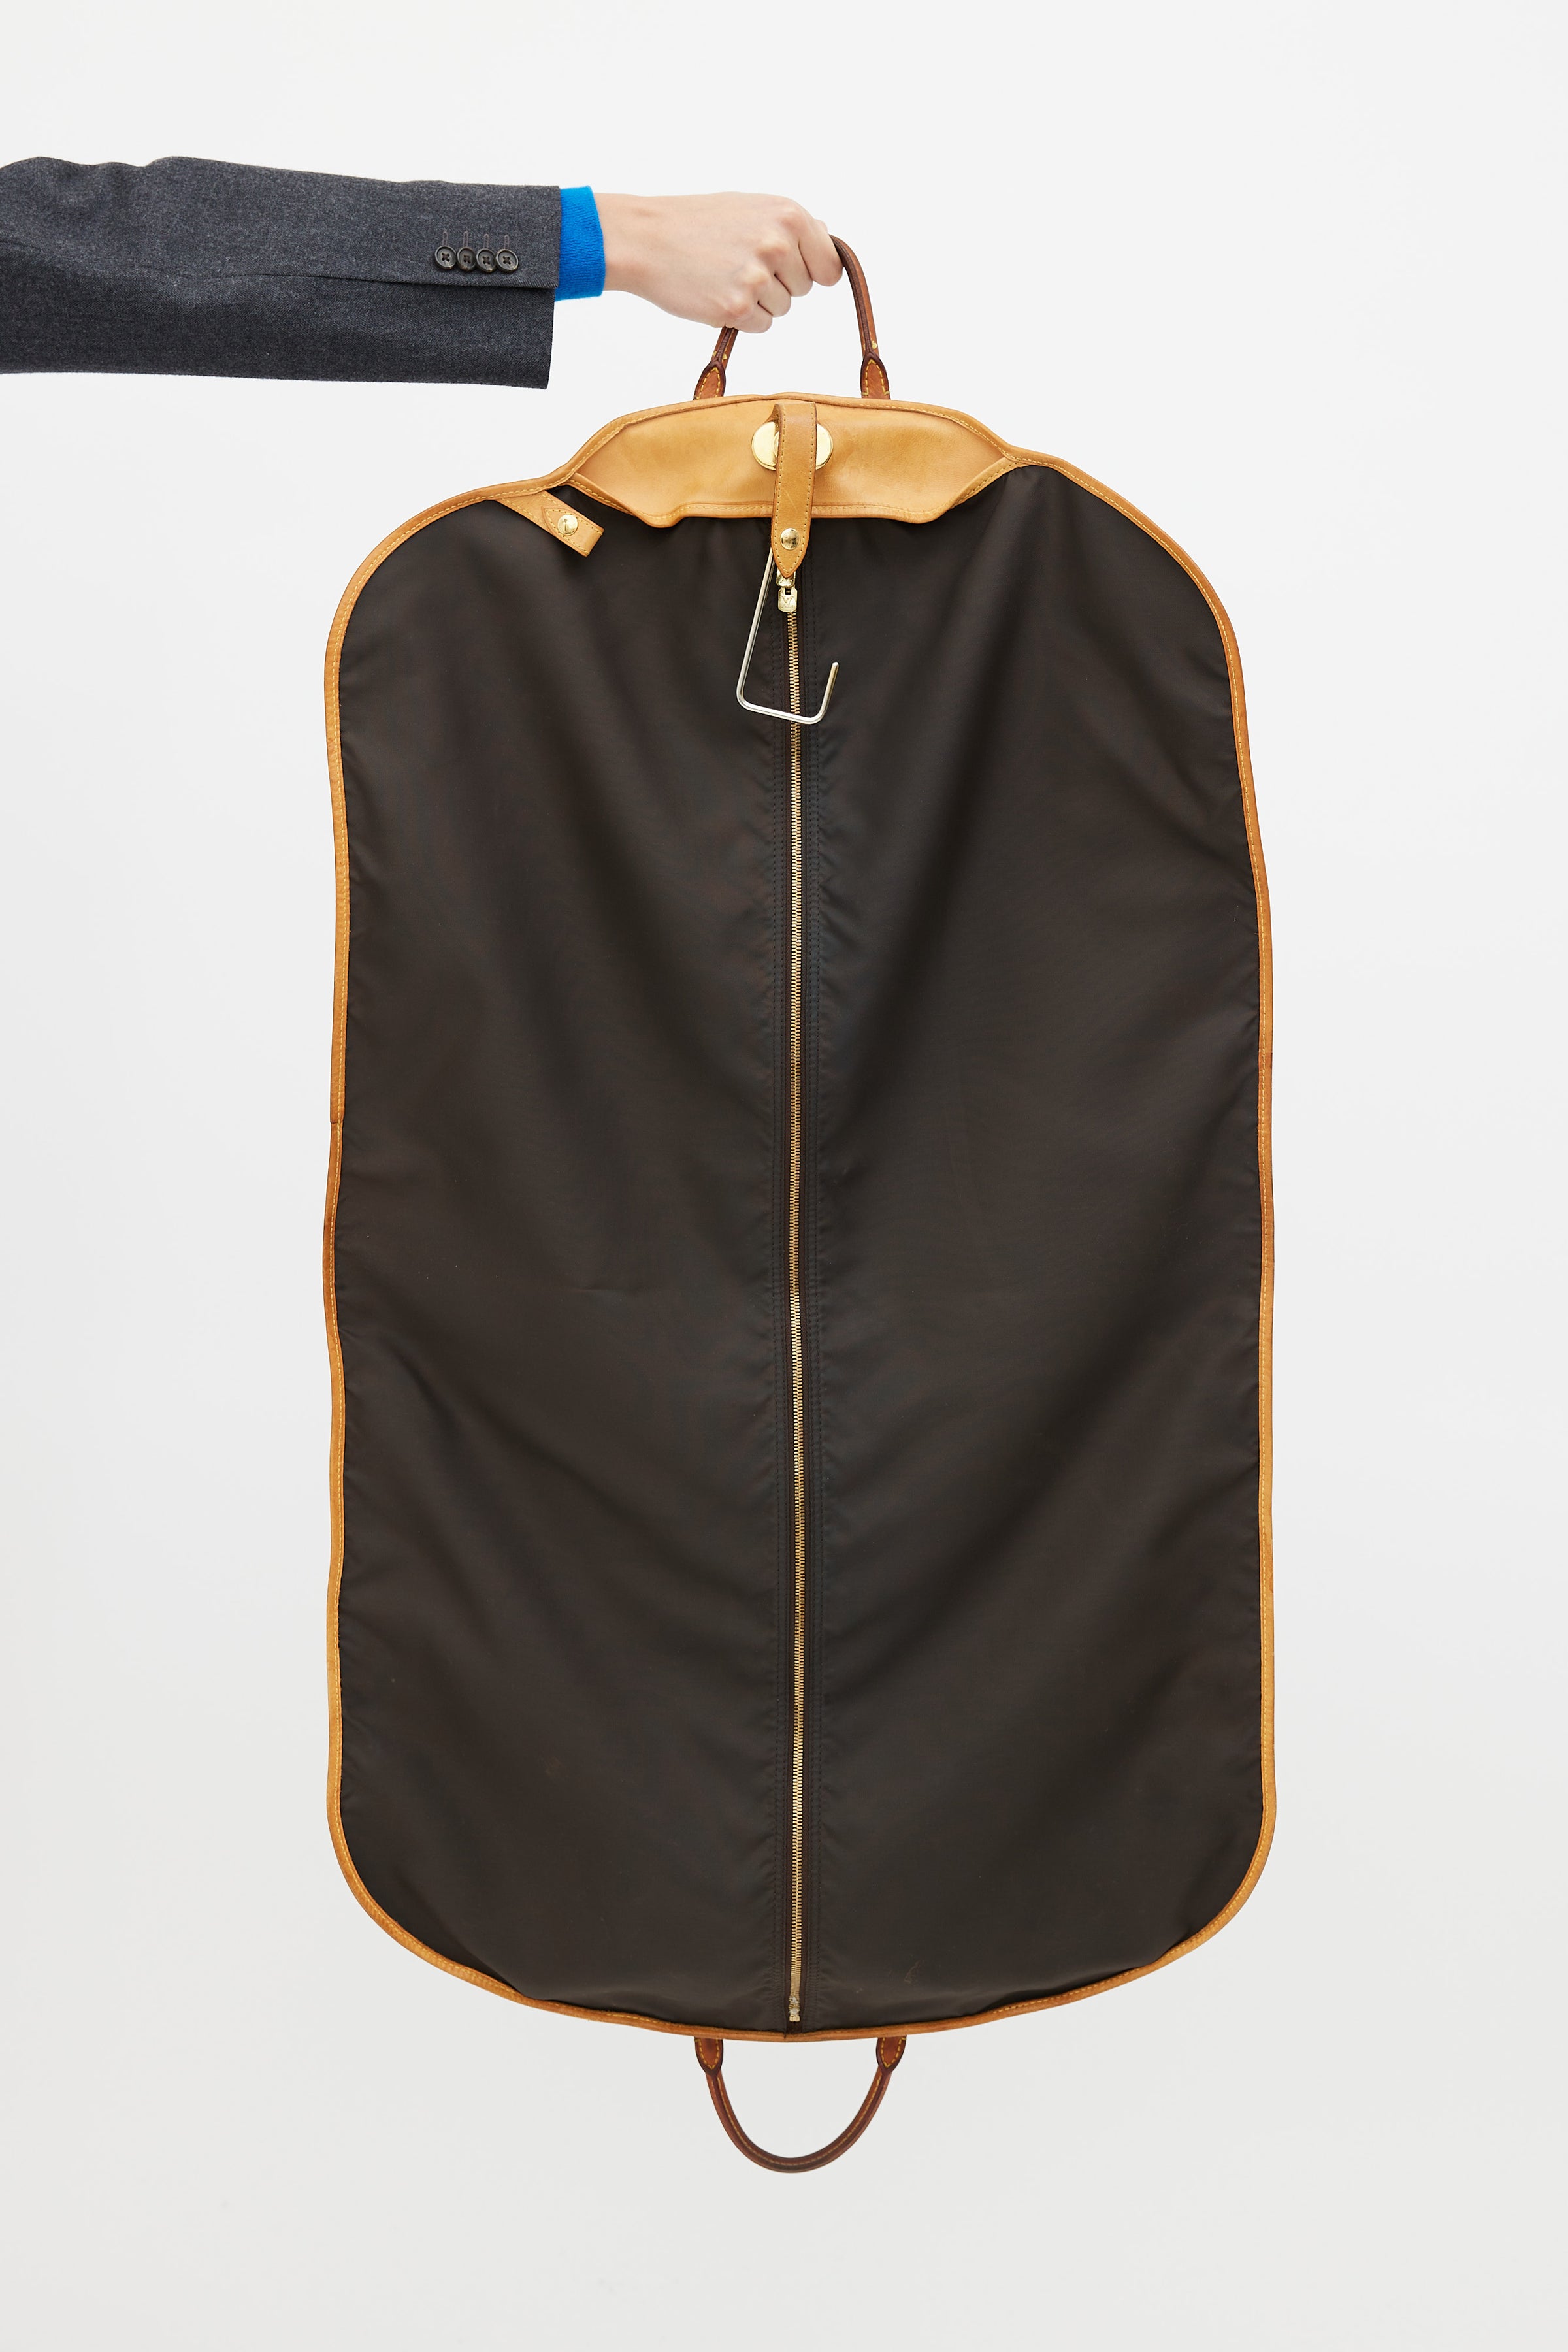 Past auction: Coated monogram canvas garment bag, Louis Vuitton